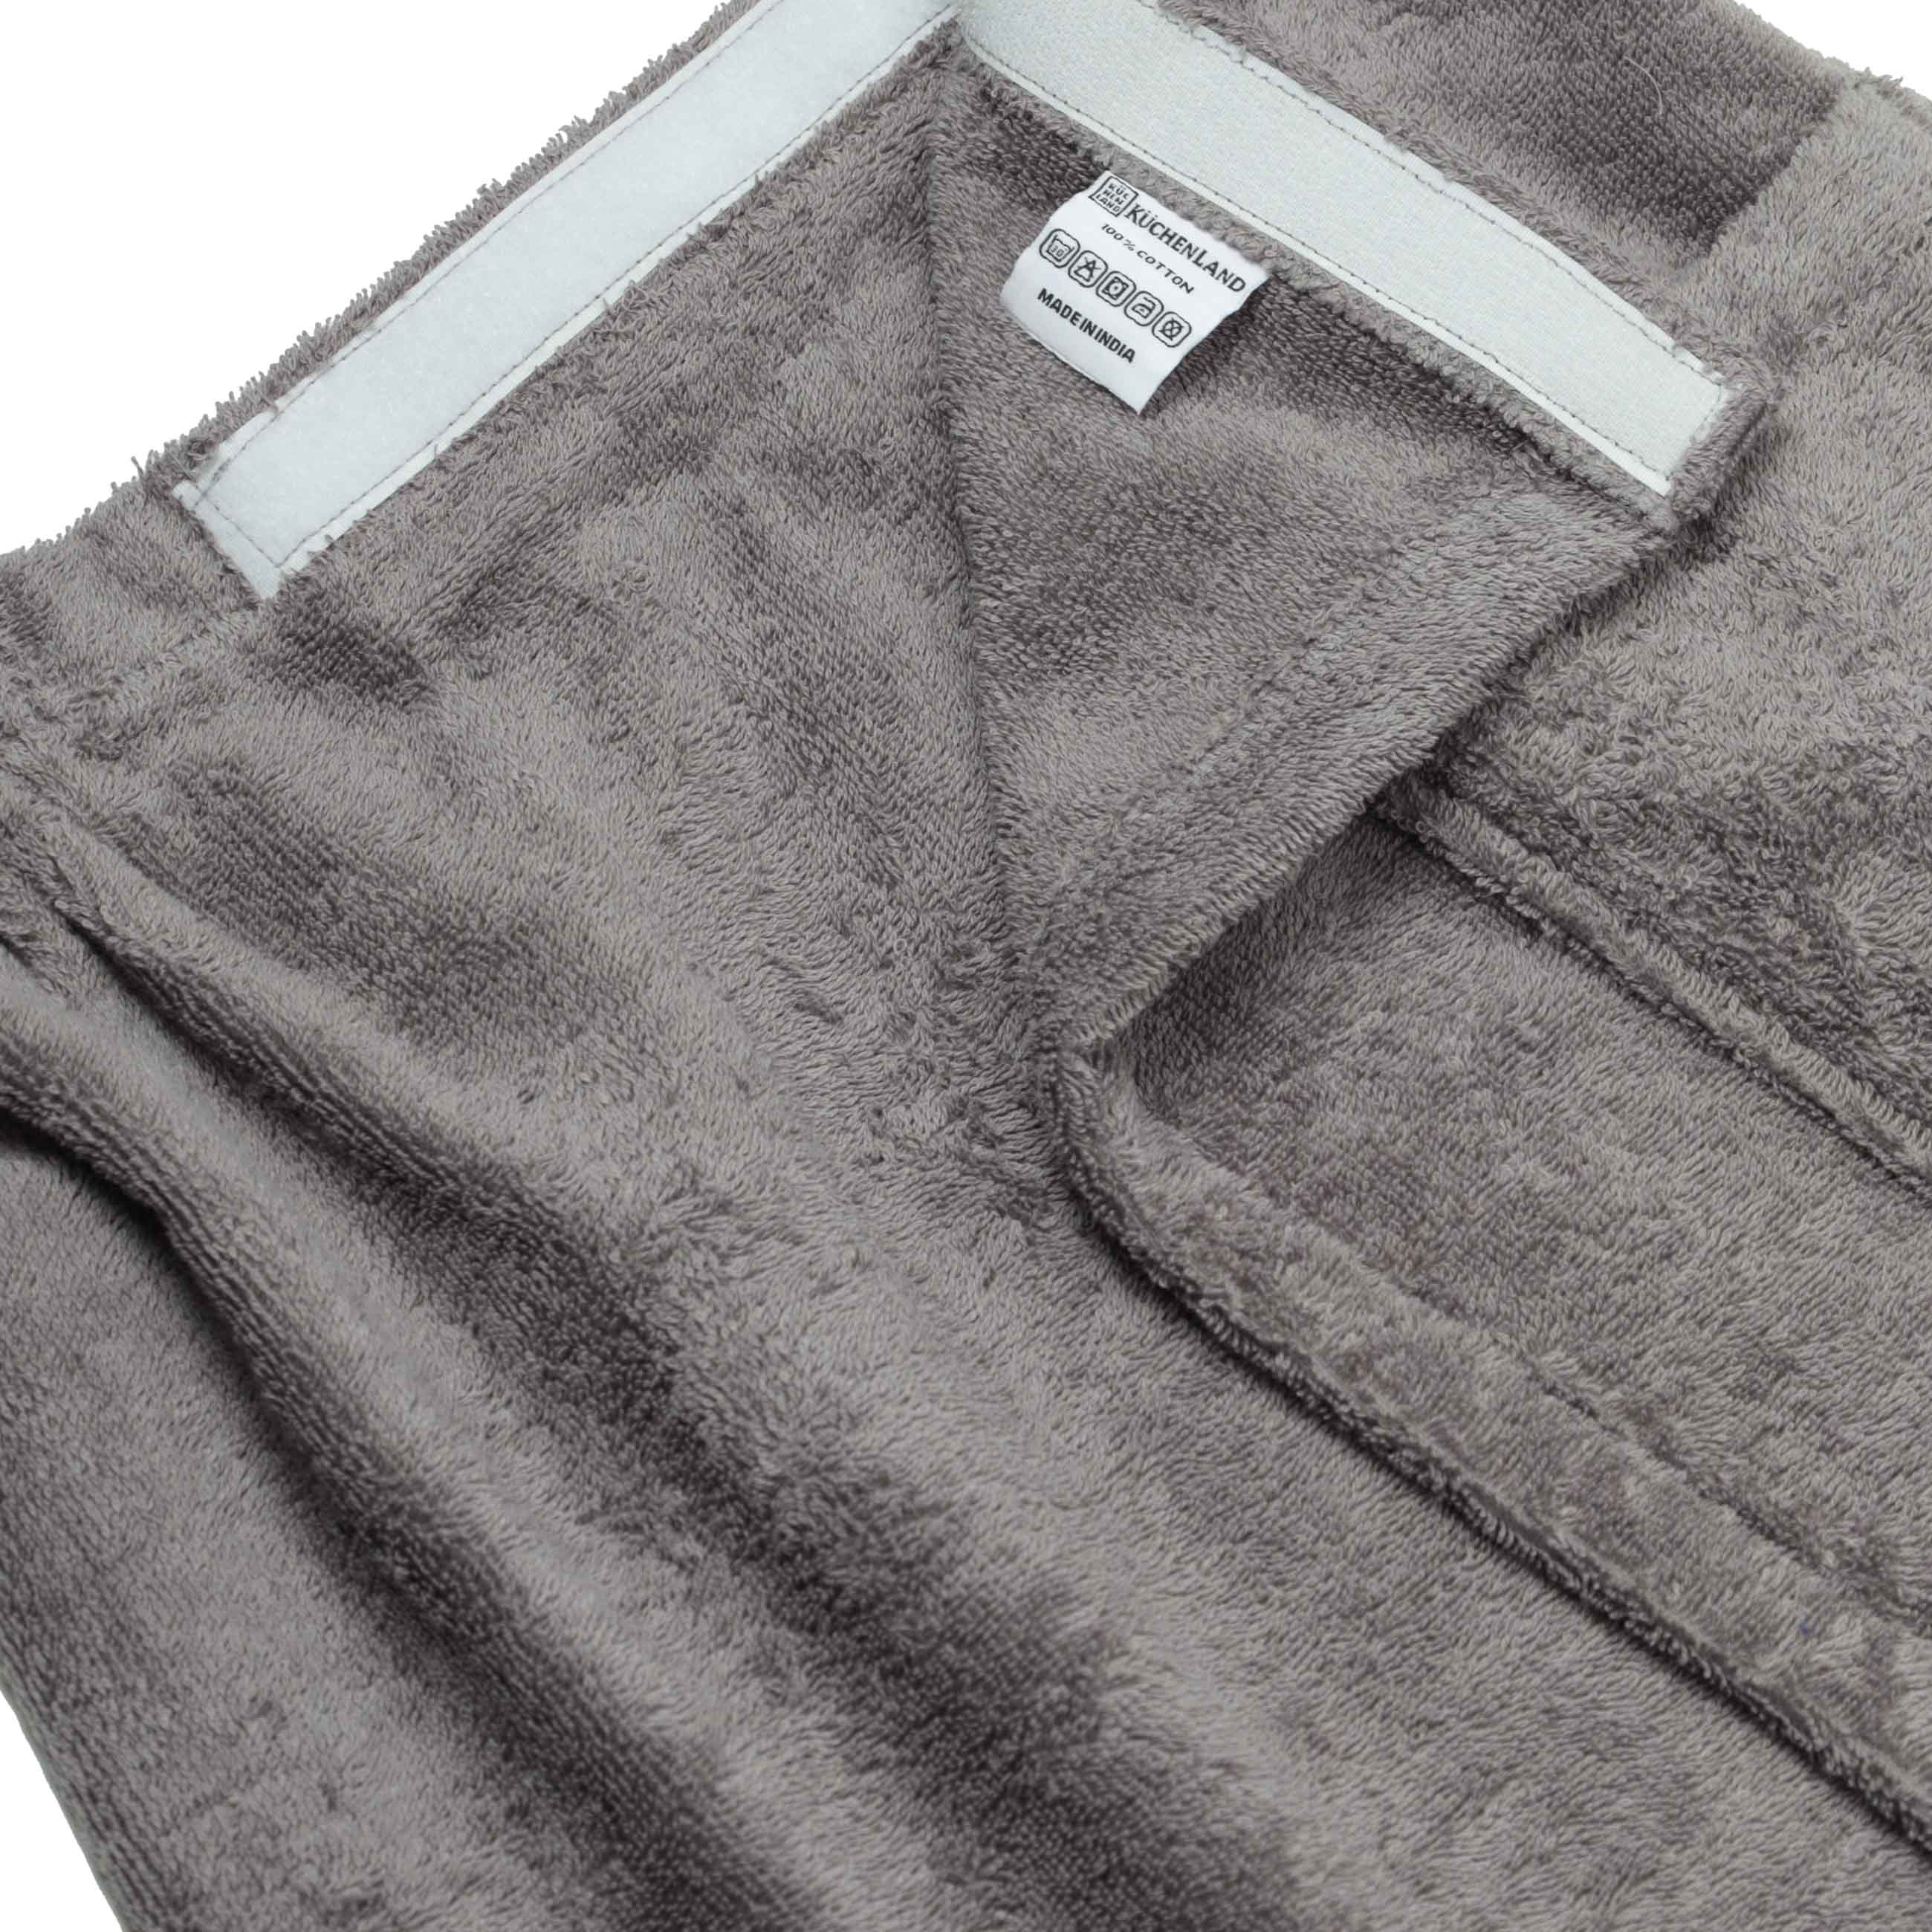 Полотенце-килт мужское, 70х160 см, на липучке, хлопок, темно-серое, Spa towel изображение № 3